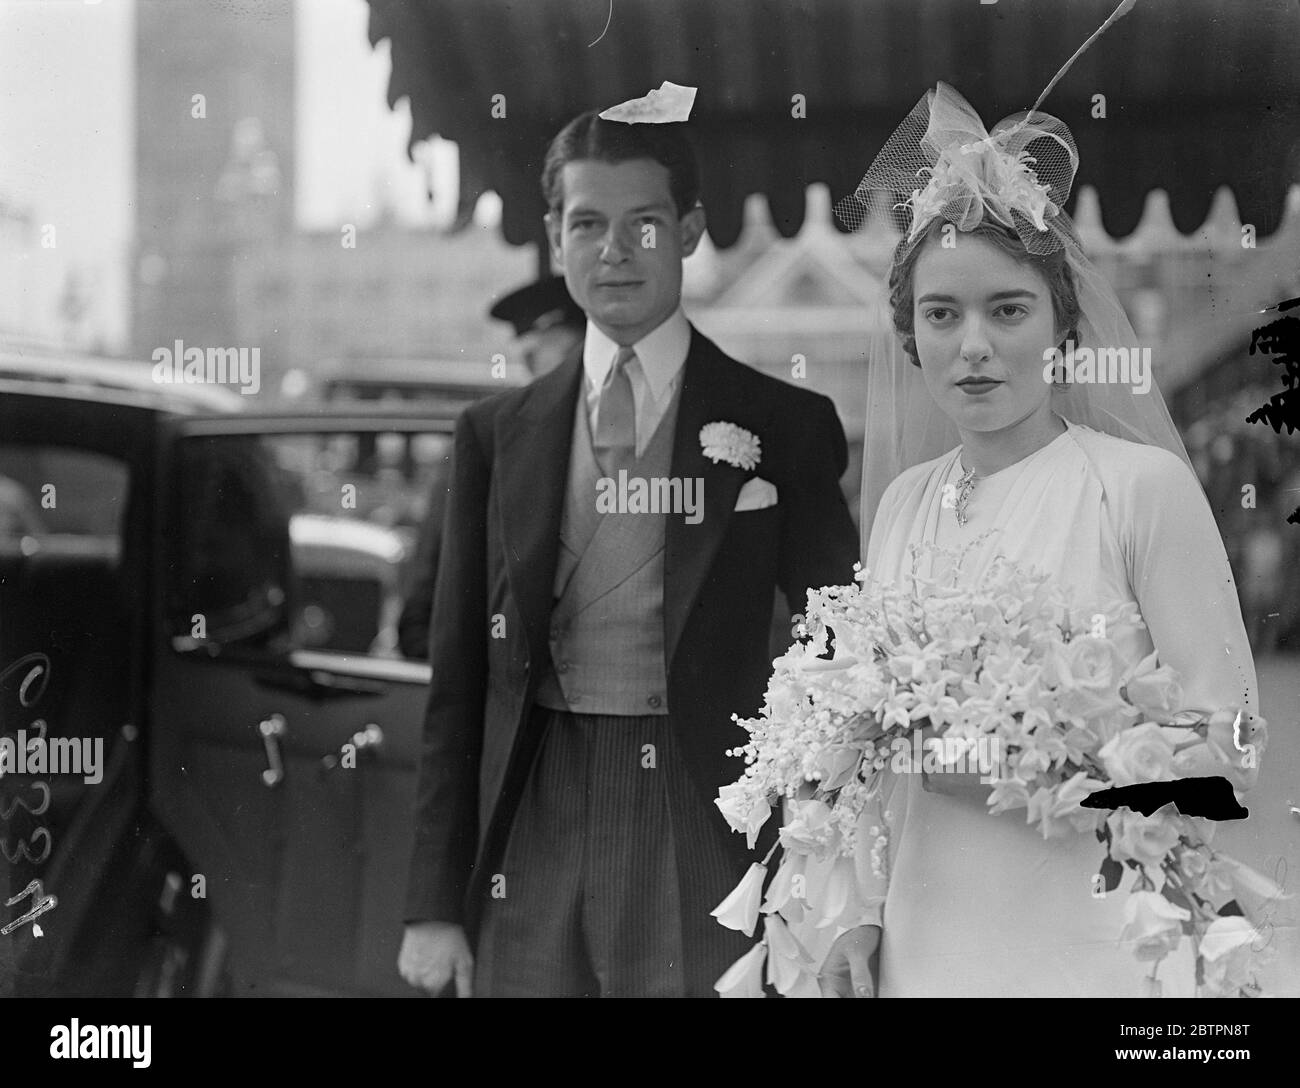 Miniatur-Kopfschmuck. Die Hochzeit von Anthony Norman und Miss Anne Watson-Hughes fand in der St. Margaret's Church, Westminster statt. Foto zeigt: Die Braut, trug einen sehr kleinen Nest Kopfschmuck, verlassen mit dem Bräutigam nach der Zeremonie. Juni 1937 Stockfoto